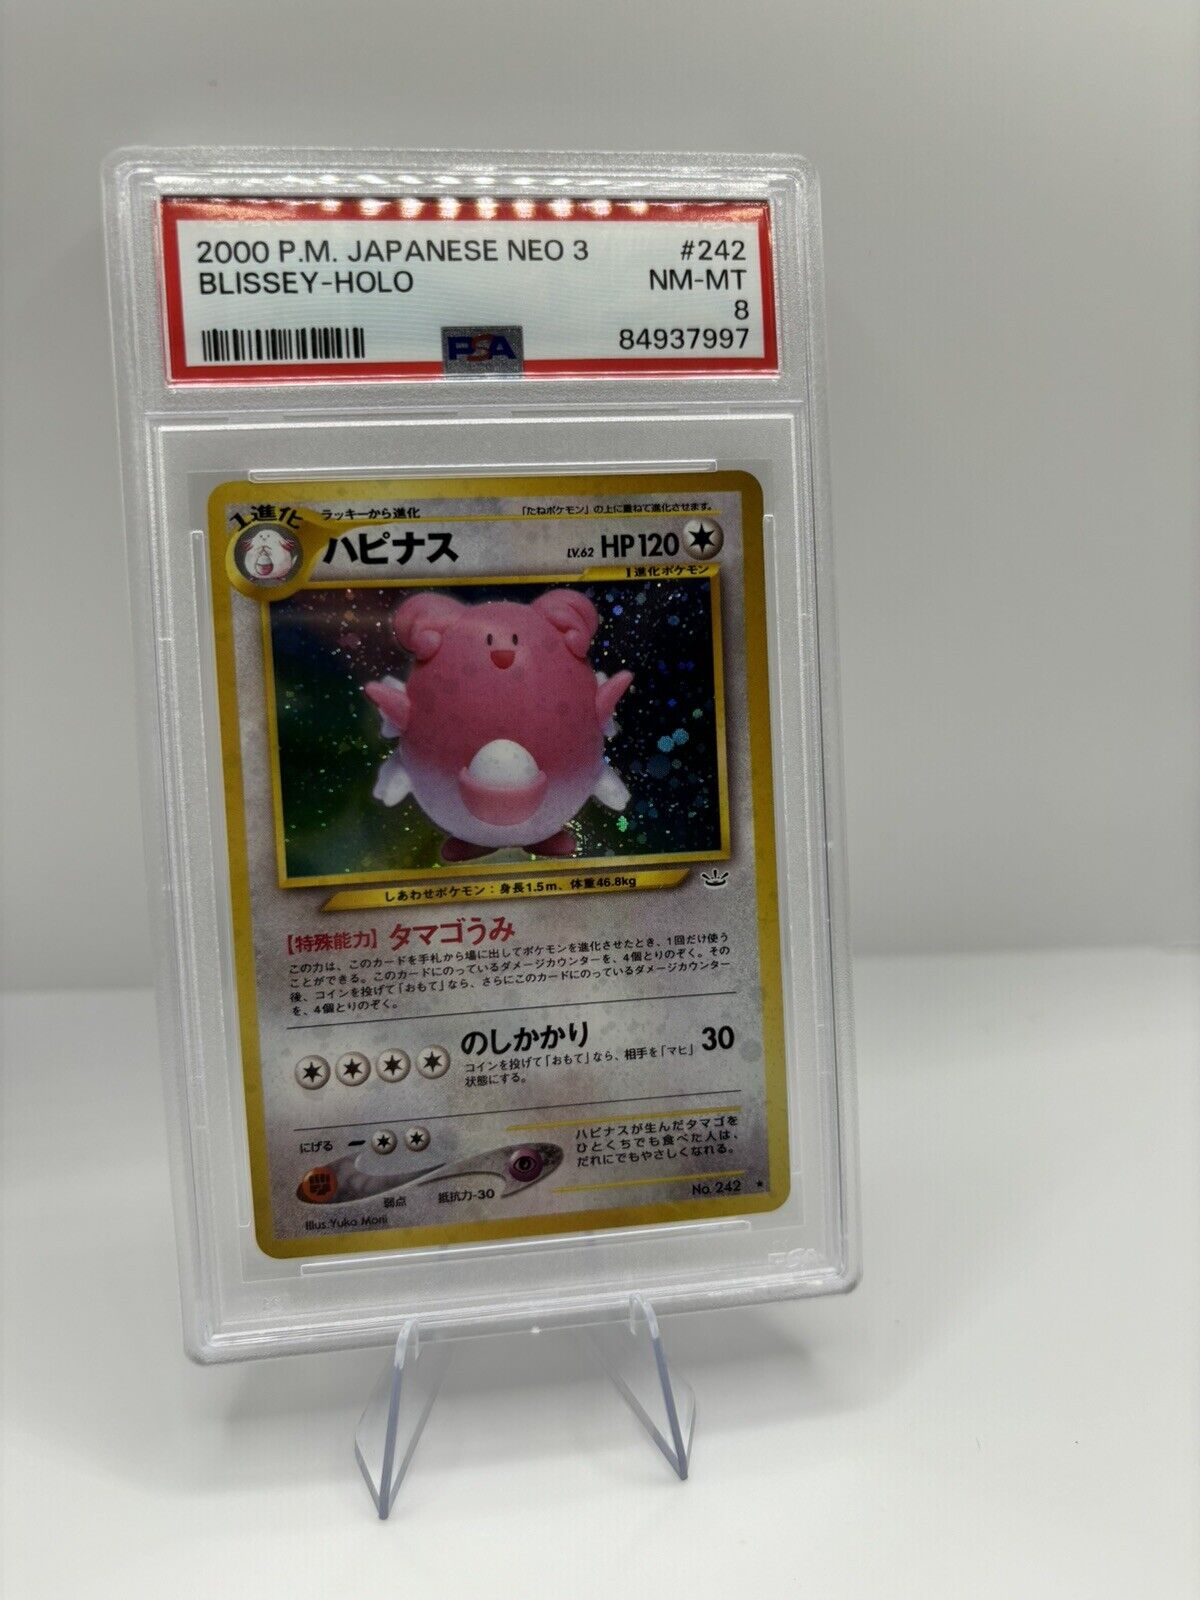 PSA 8 Blissey Neo 3 #242 Neo Revelation Japanese Pokemon Card MINT Holo